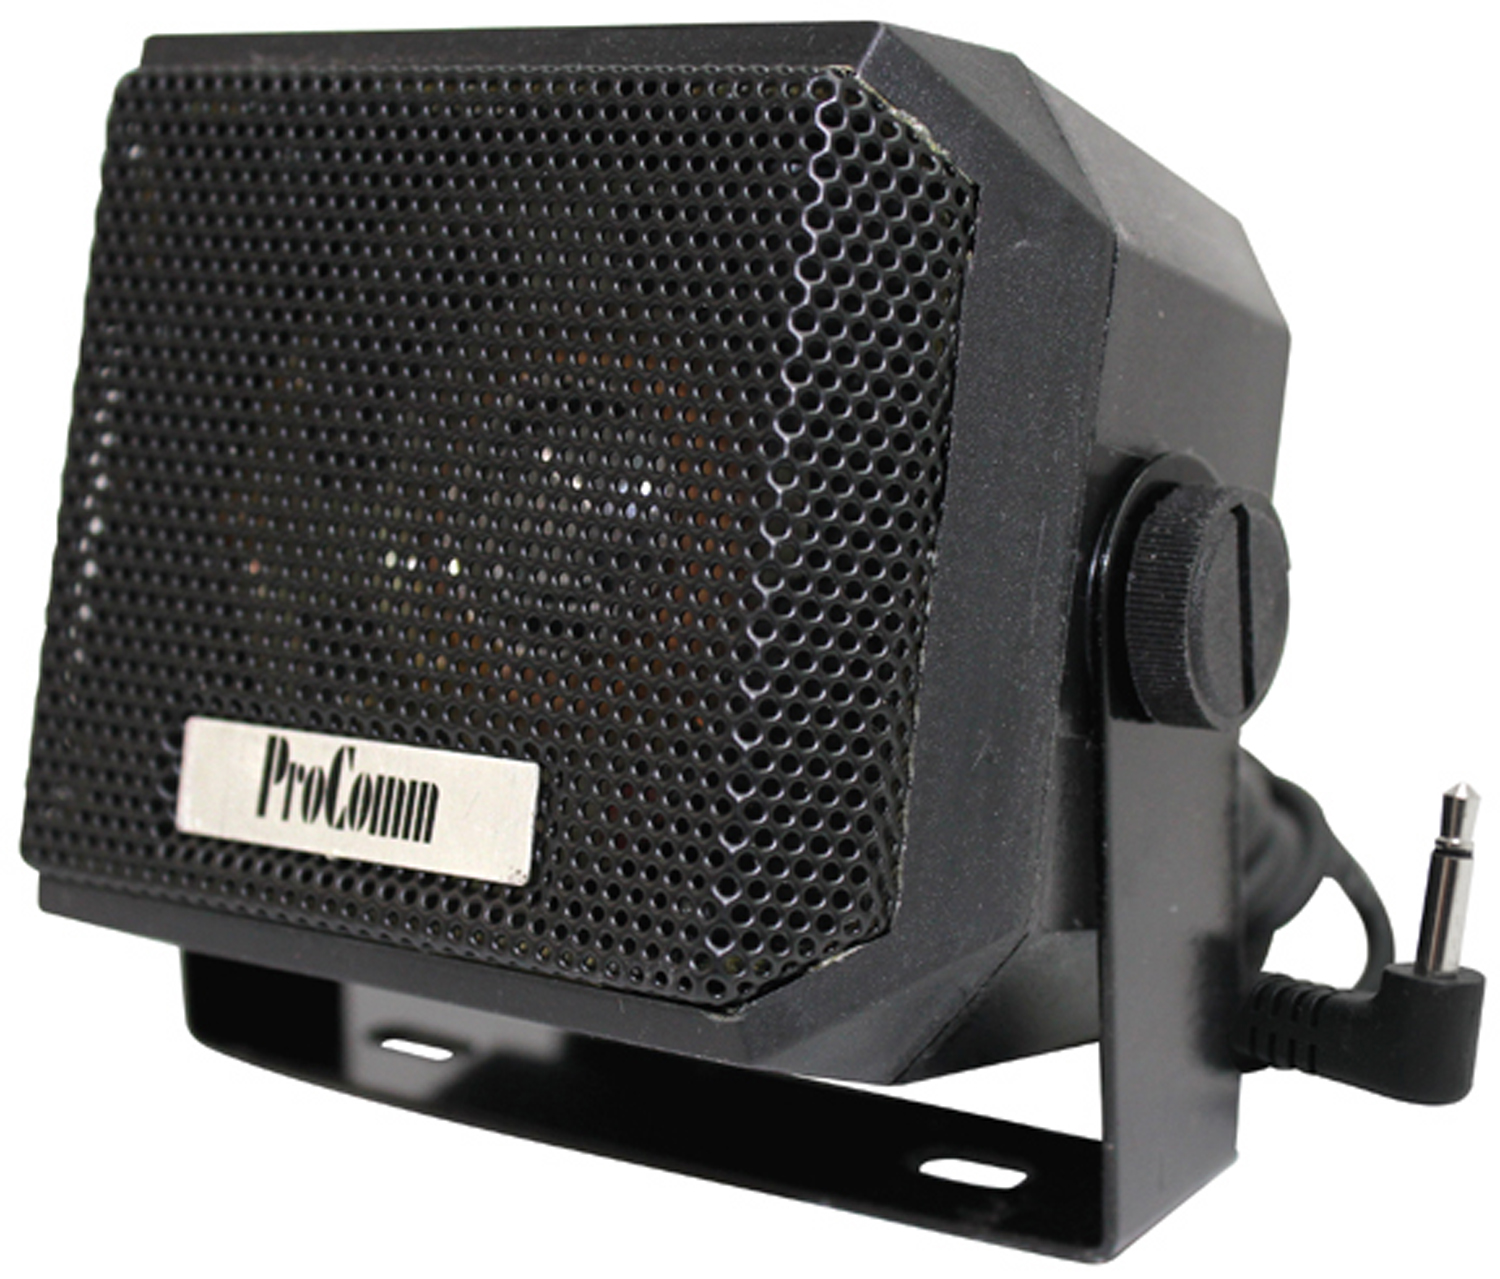 Procomm- 5 Watt 2-1/4" Cb Extension Speaker